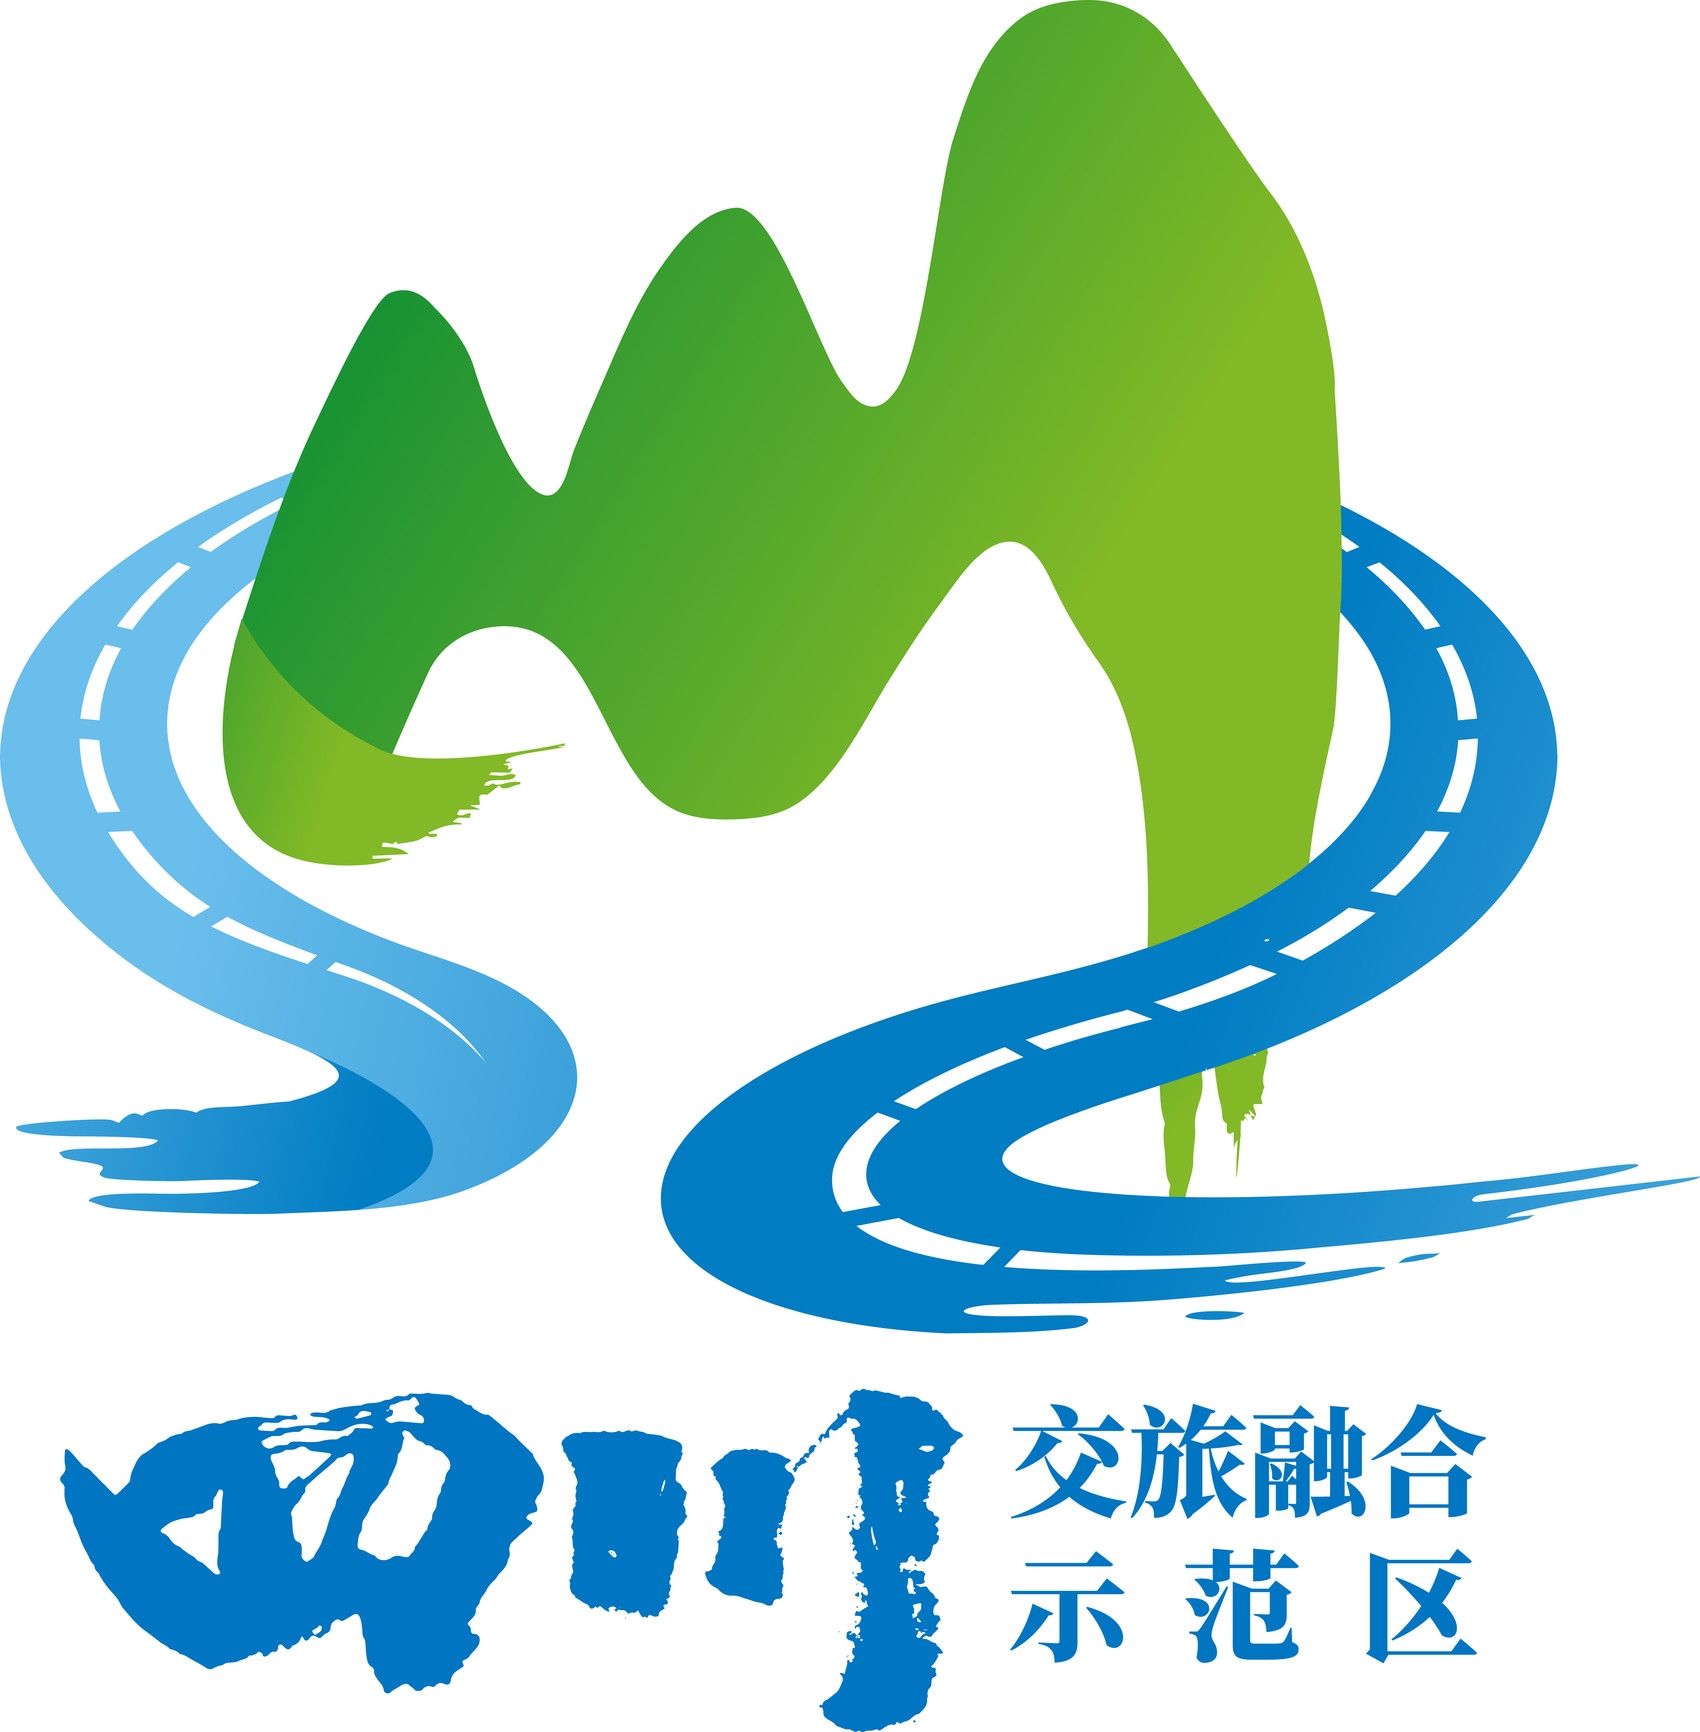 四川交旅融合品牌logo。四川省交通运输厅供图